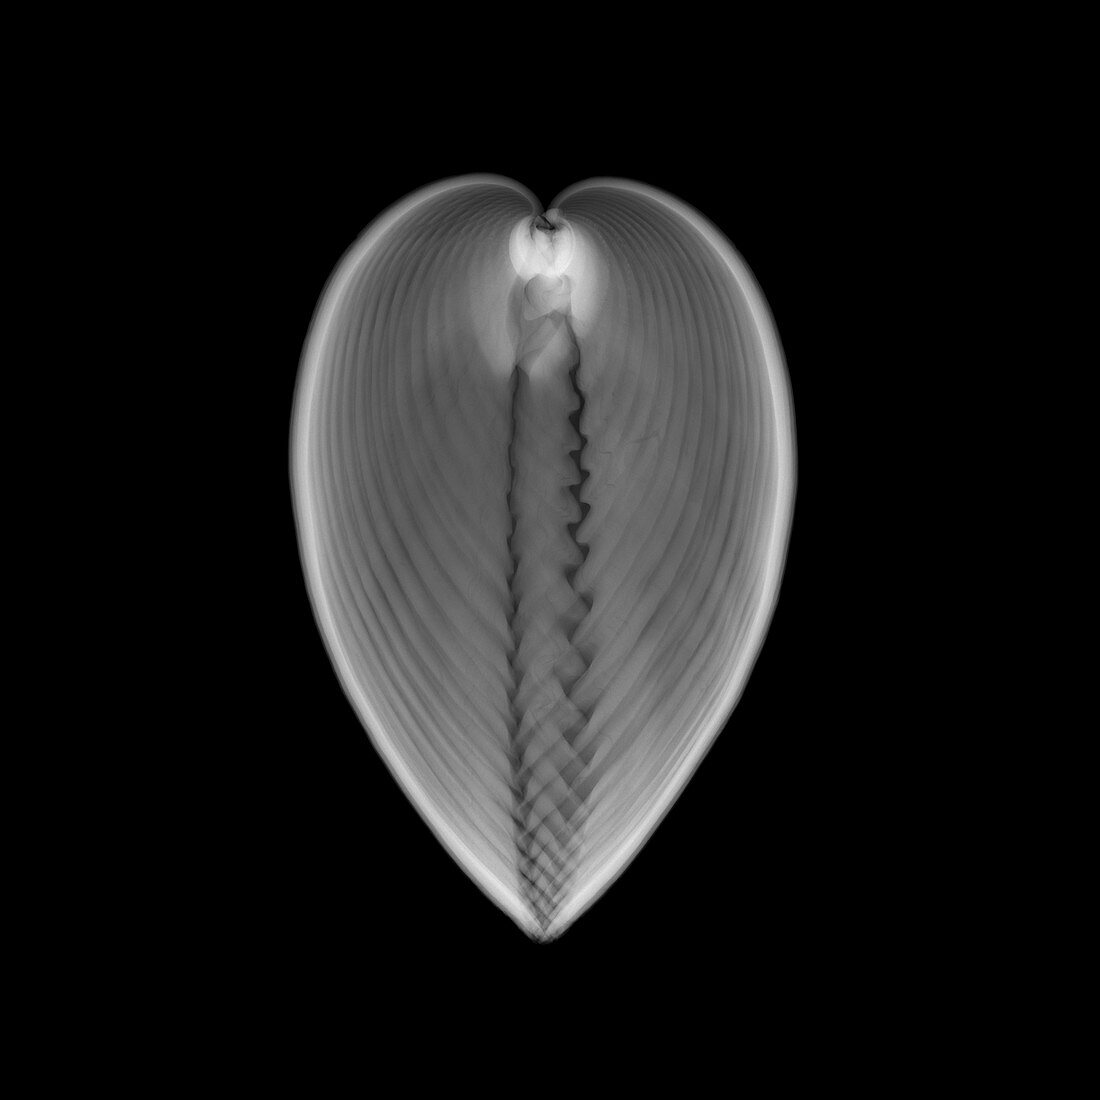 Cockle seashell, X-ray